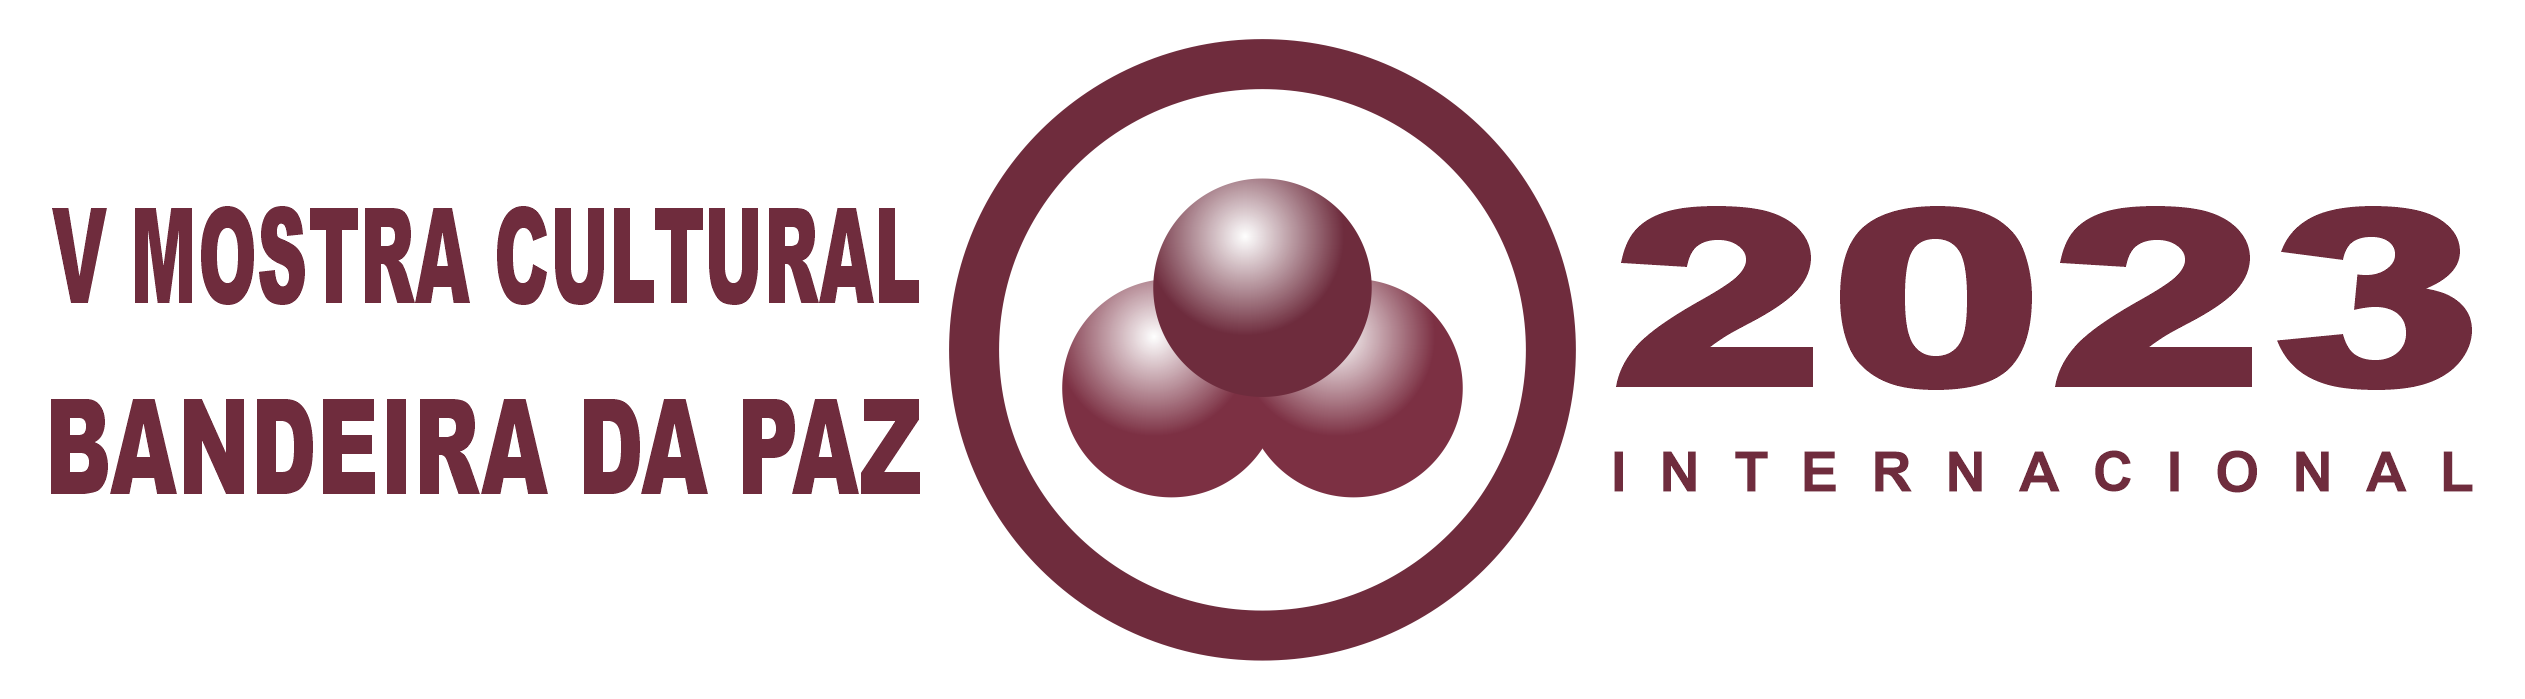 Logos IV MOSTRA 2023_INTERNACIONAL_1